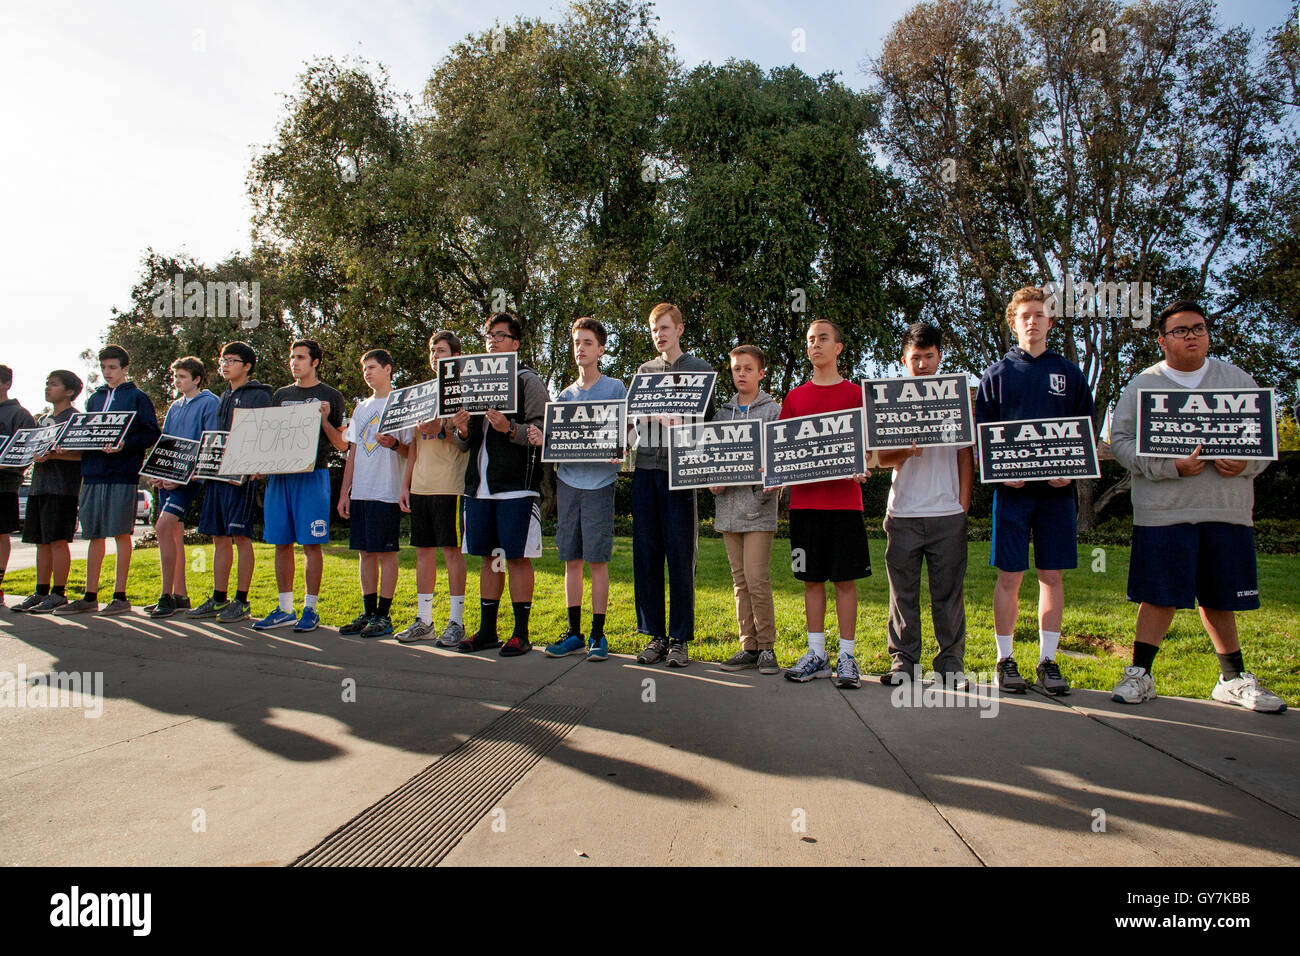 Un groupe d'hommes et adolescents catholiques protestataires garçon détient un avortement anti manifestation devant une succursale de la planification familiale à Mission Viejo, CA. Banque D'Images